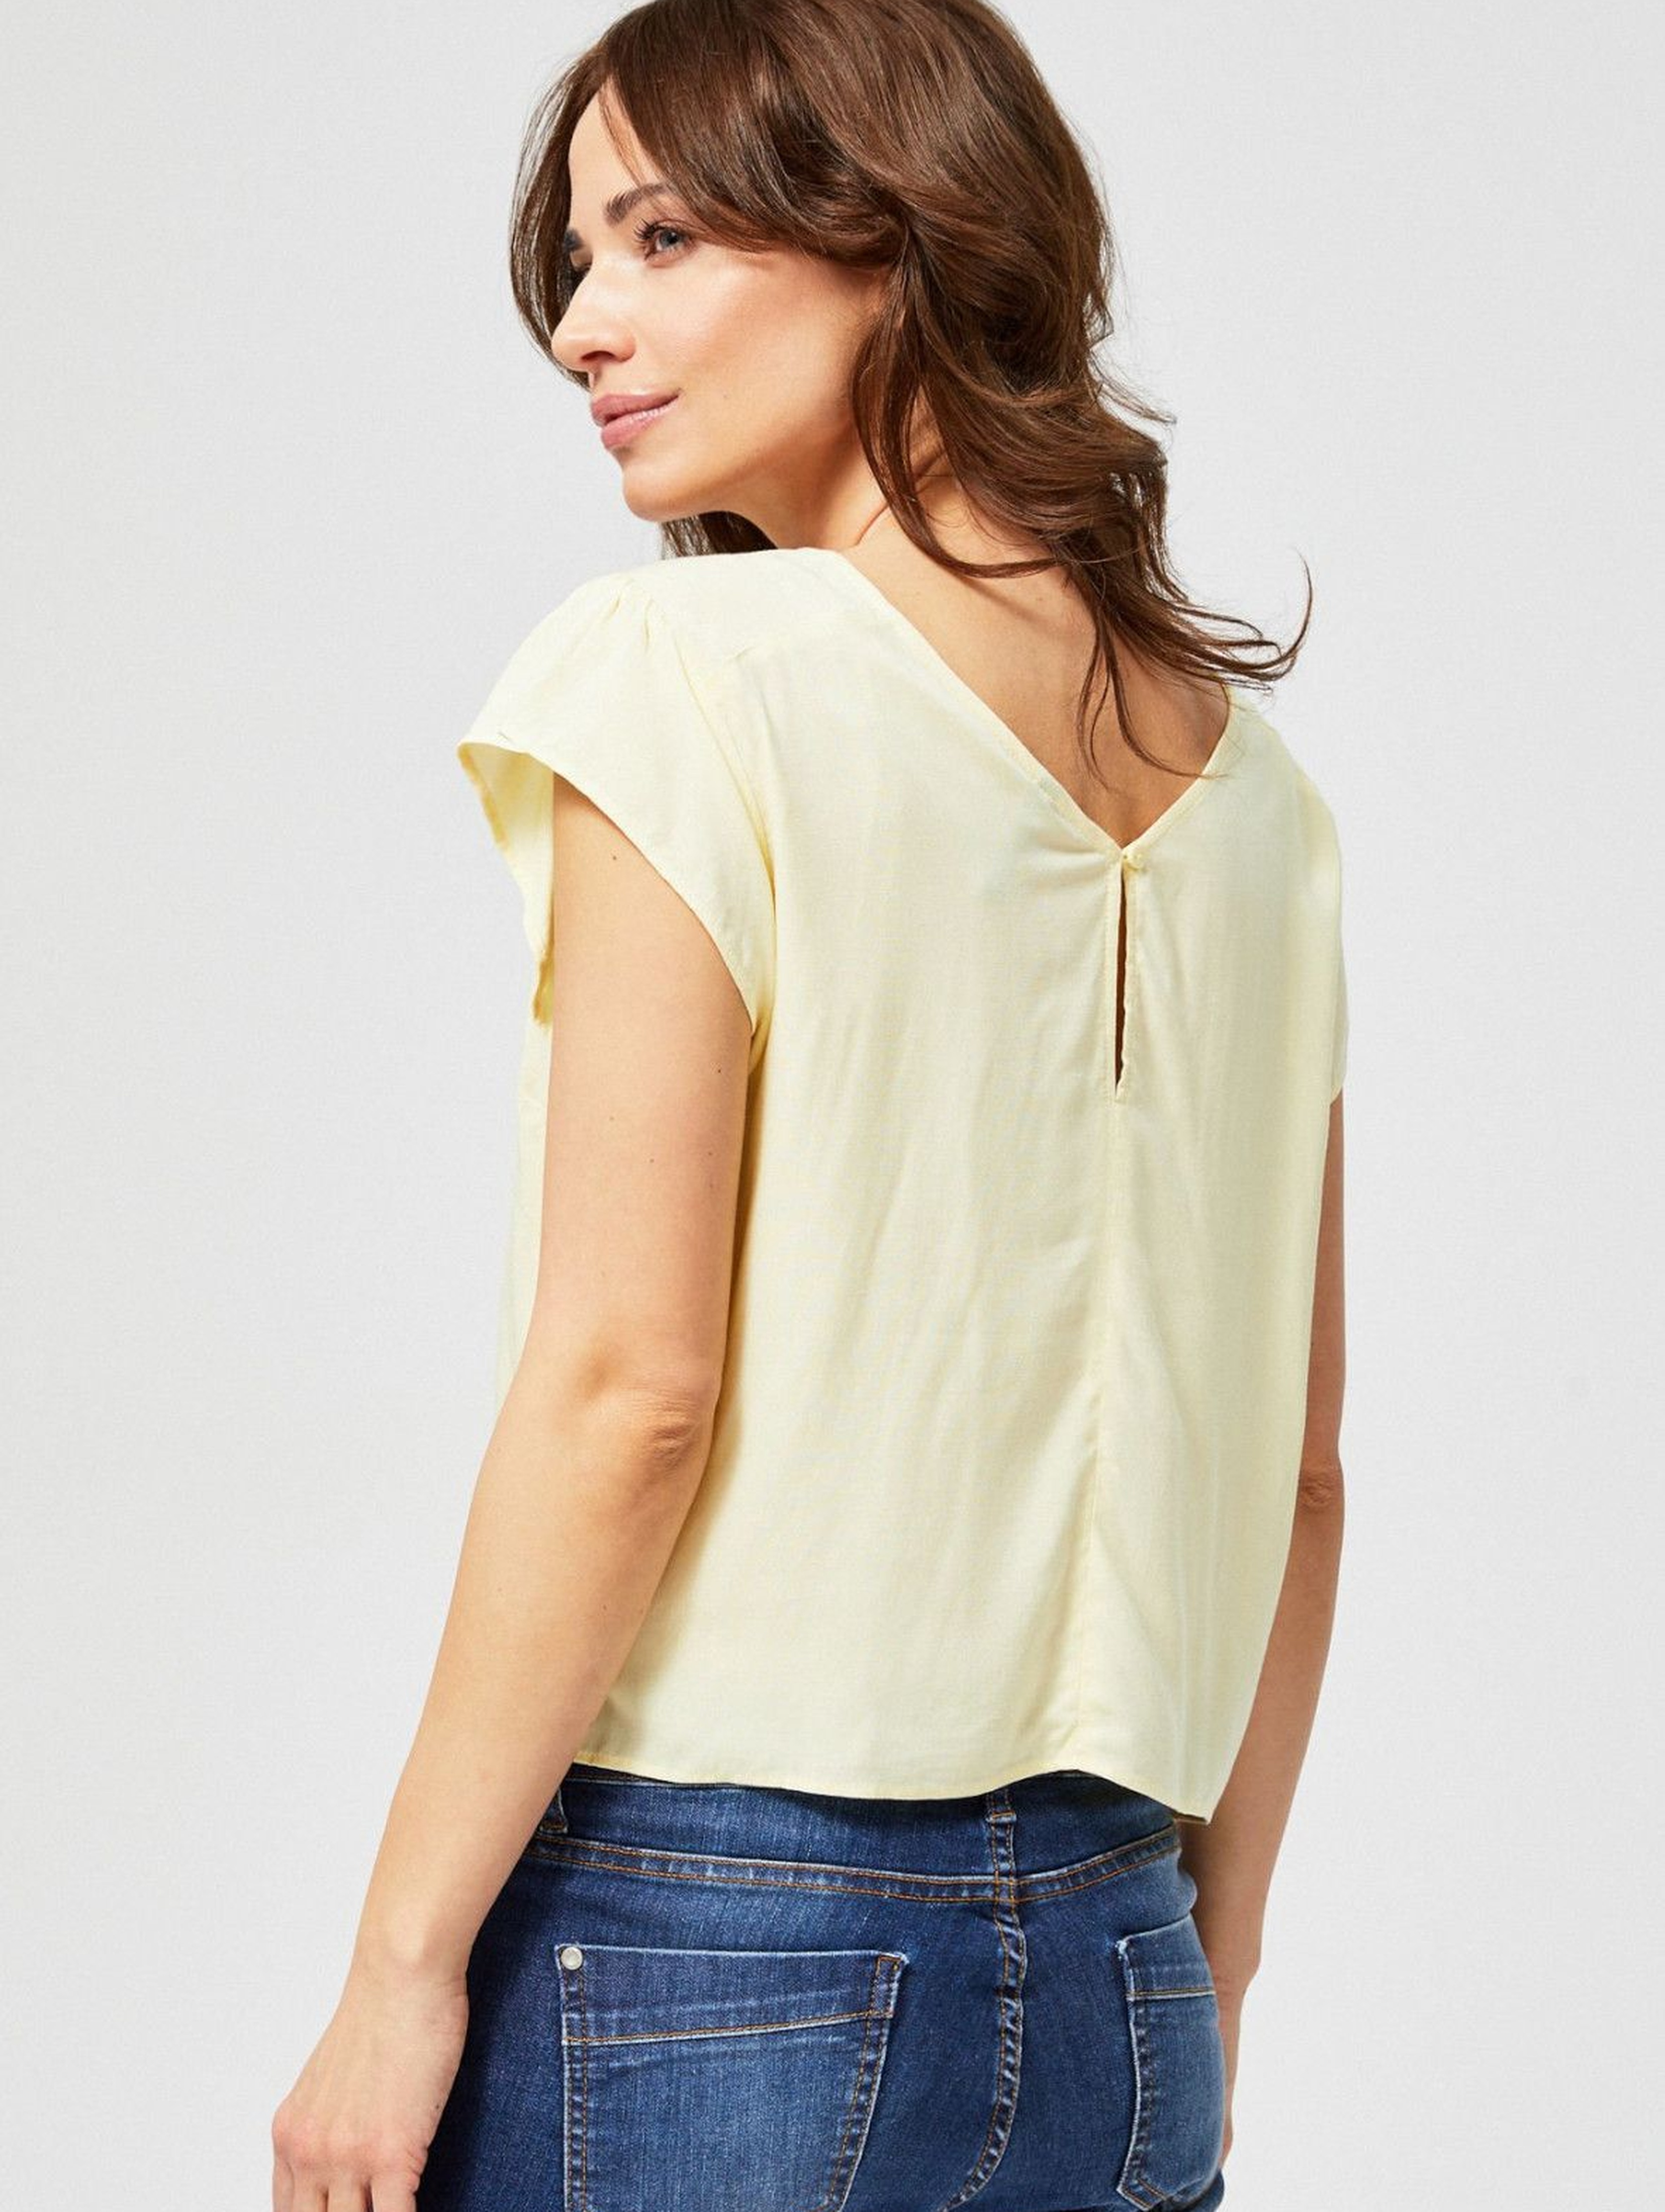 Bluzka damska koszulowa z ozdobnym wiązaniem żółta